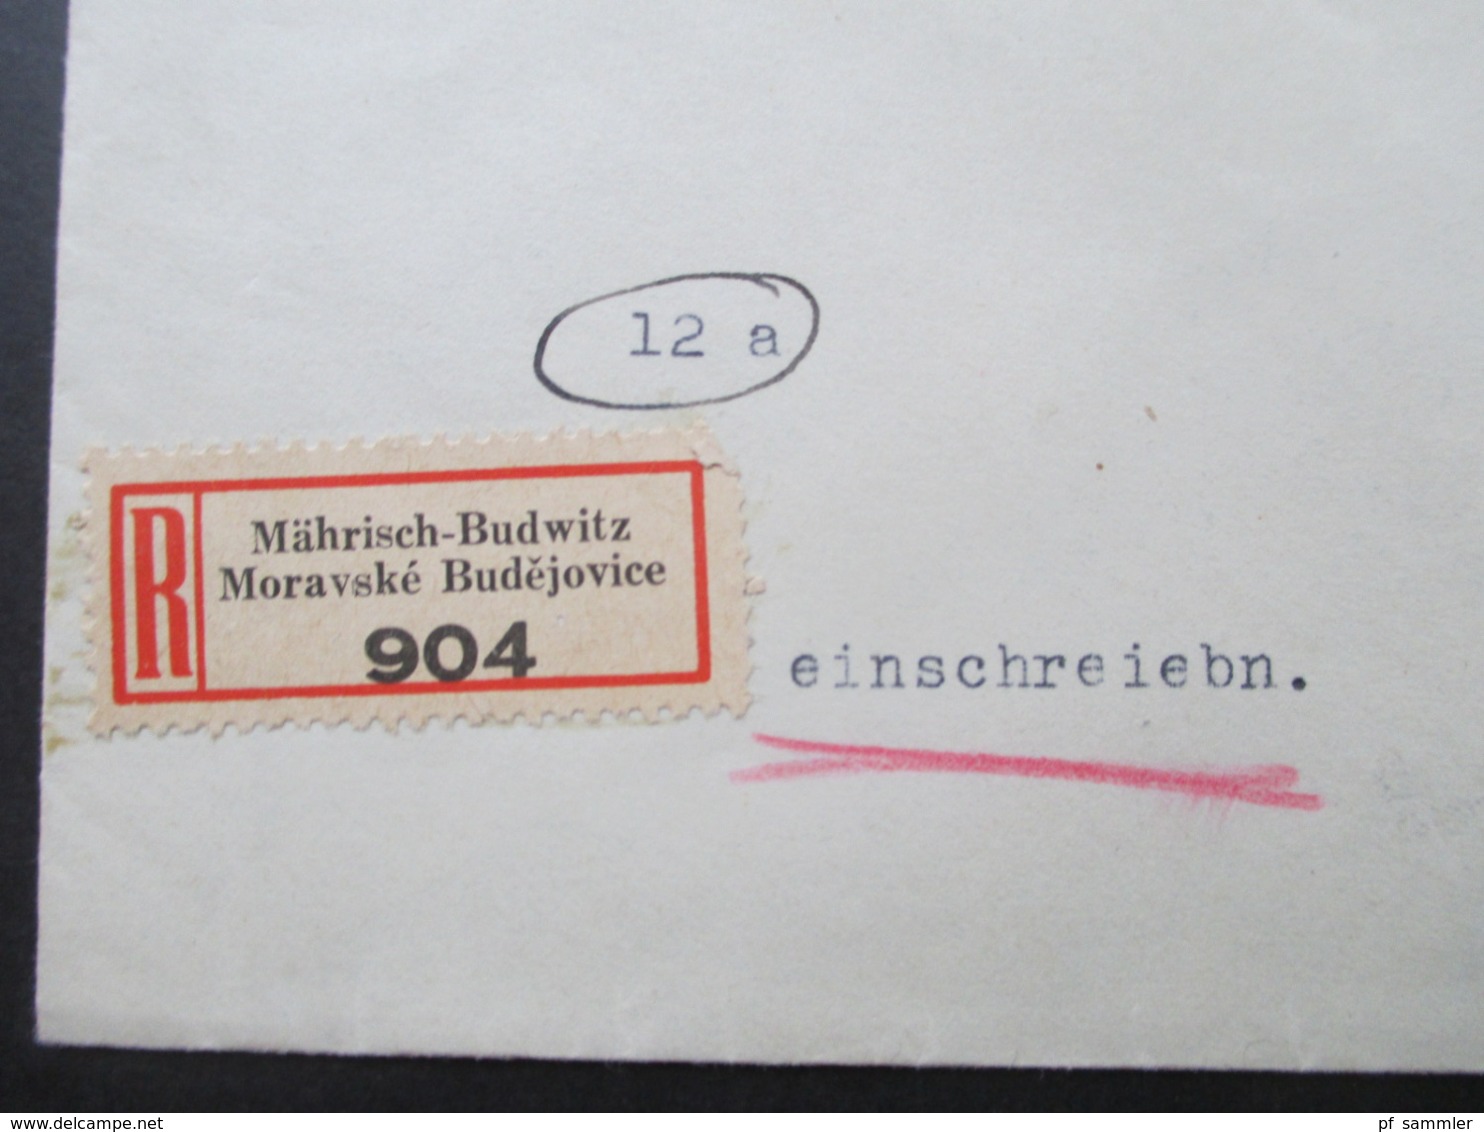 Böhmen Und Mähren Einschreiben 2 Sprachiger E Zettel Mährisch Budwitz Moravske Budejovice - Wien Freimarken Adoif Hitler - Cartas & Documentos